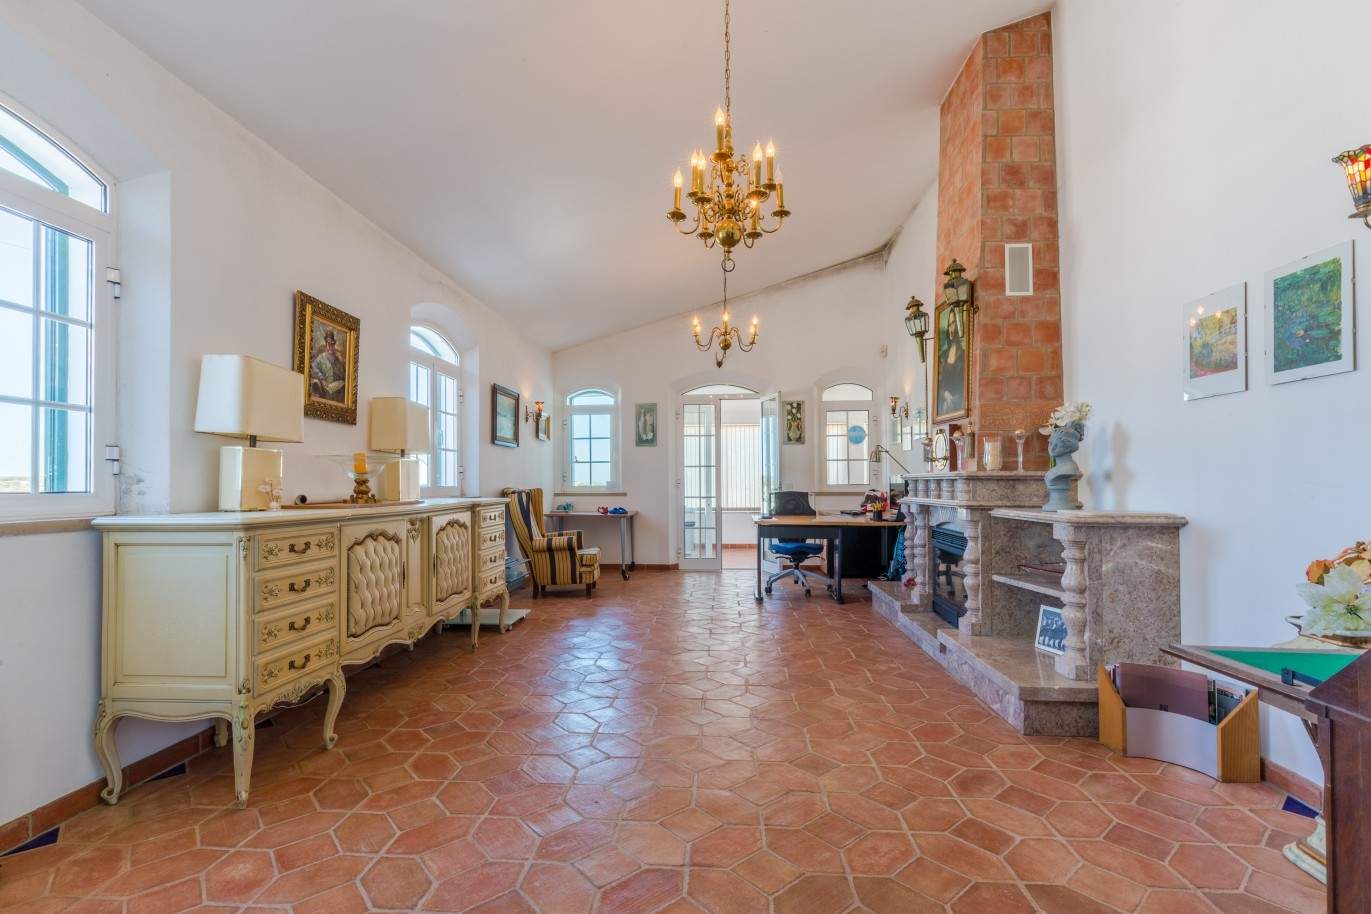 Villa individuelle à vendre, vue sur la campagne, Loulé, Algarve, Portugal_67626